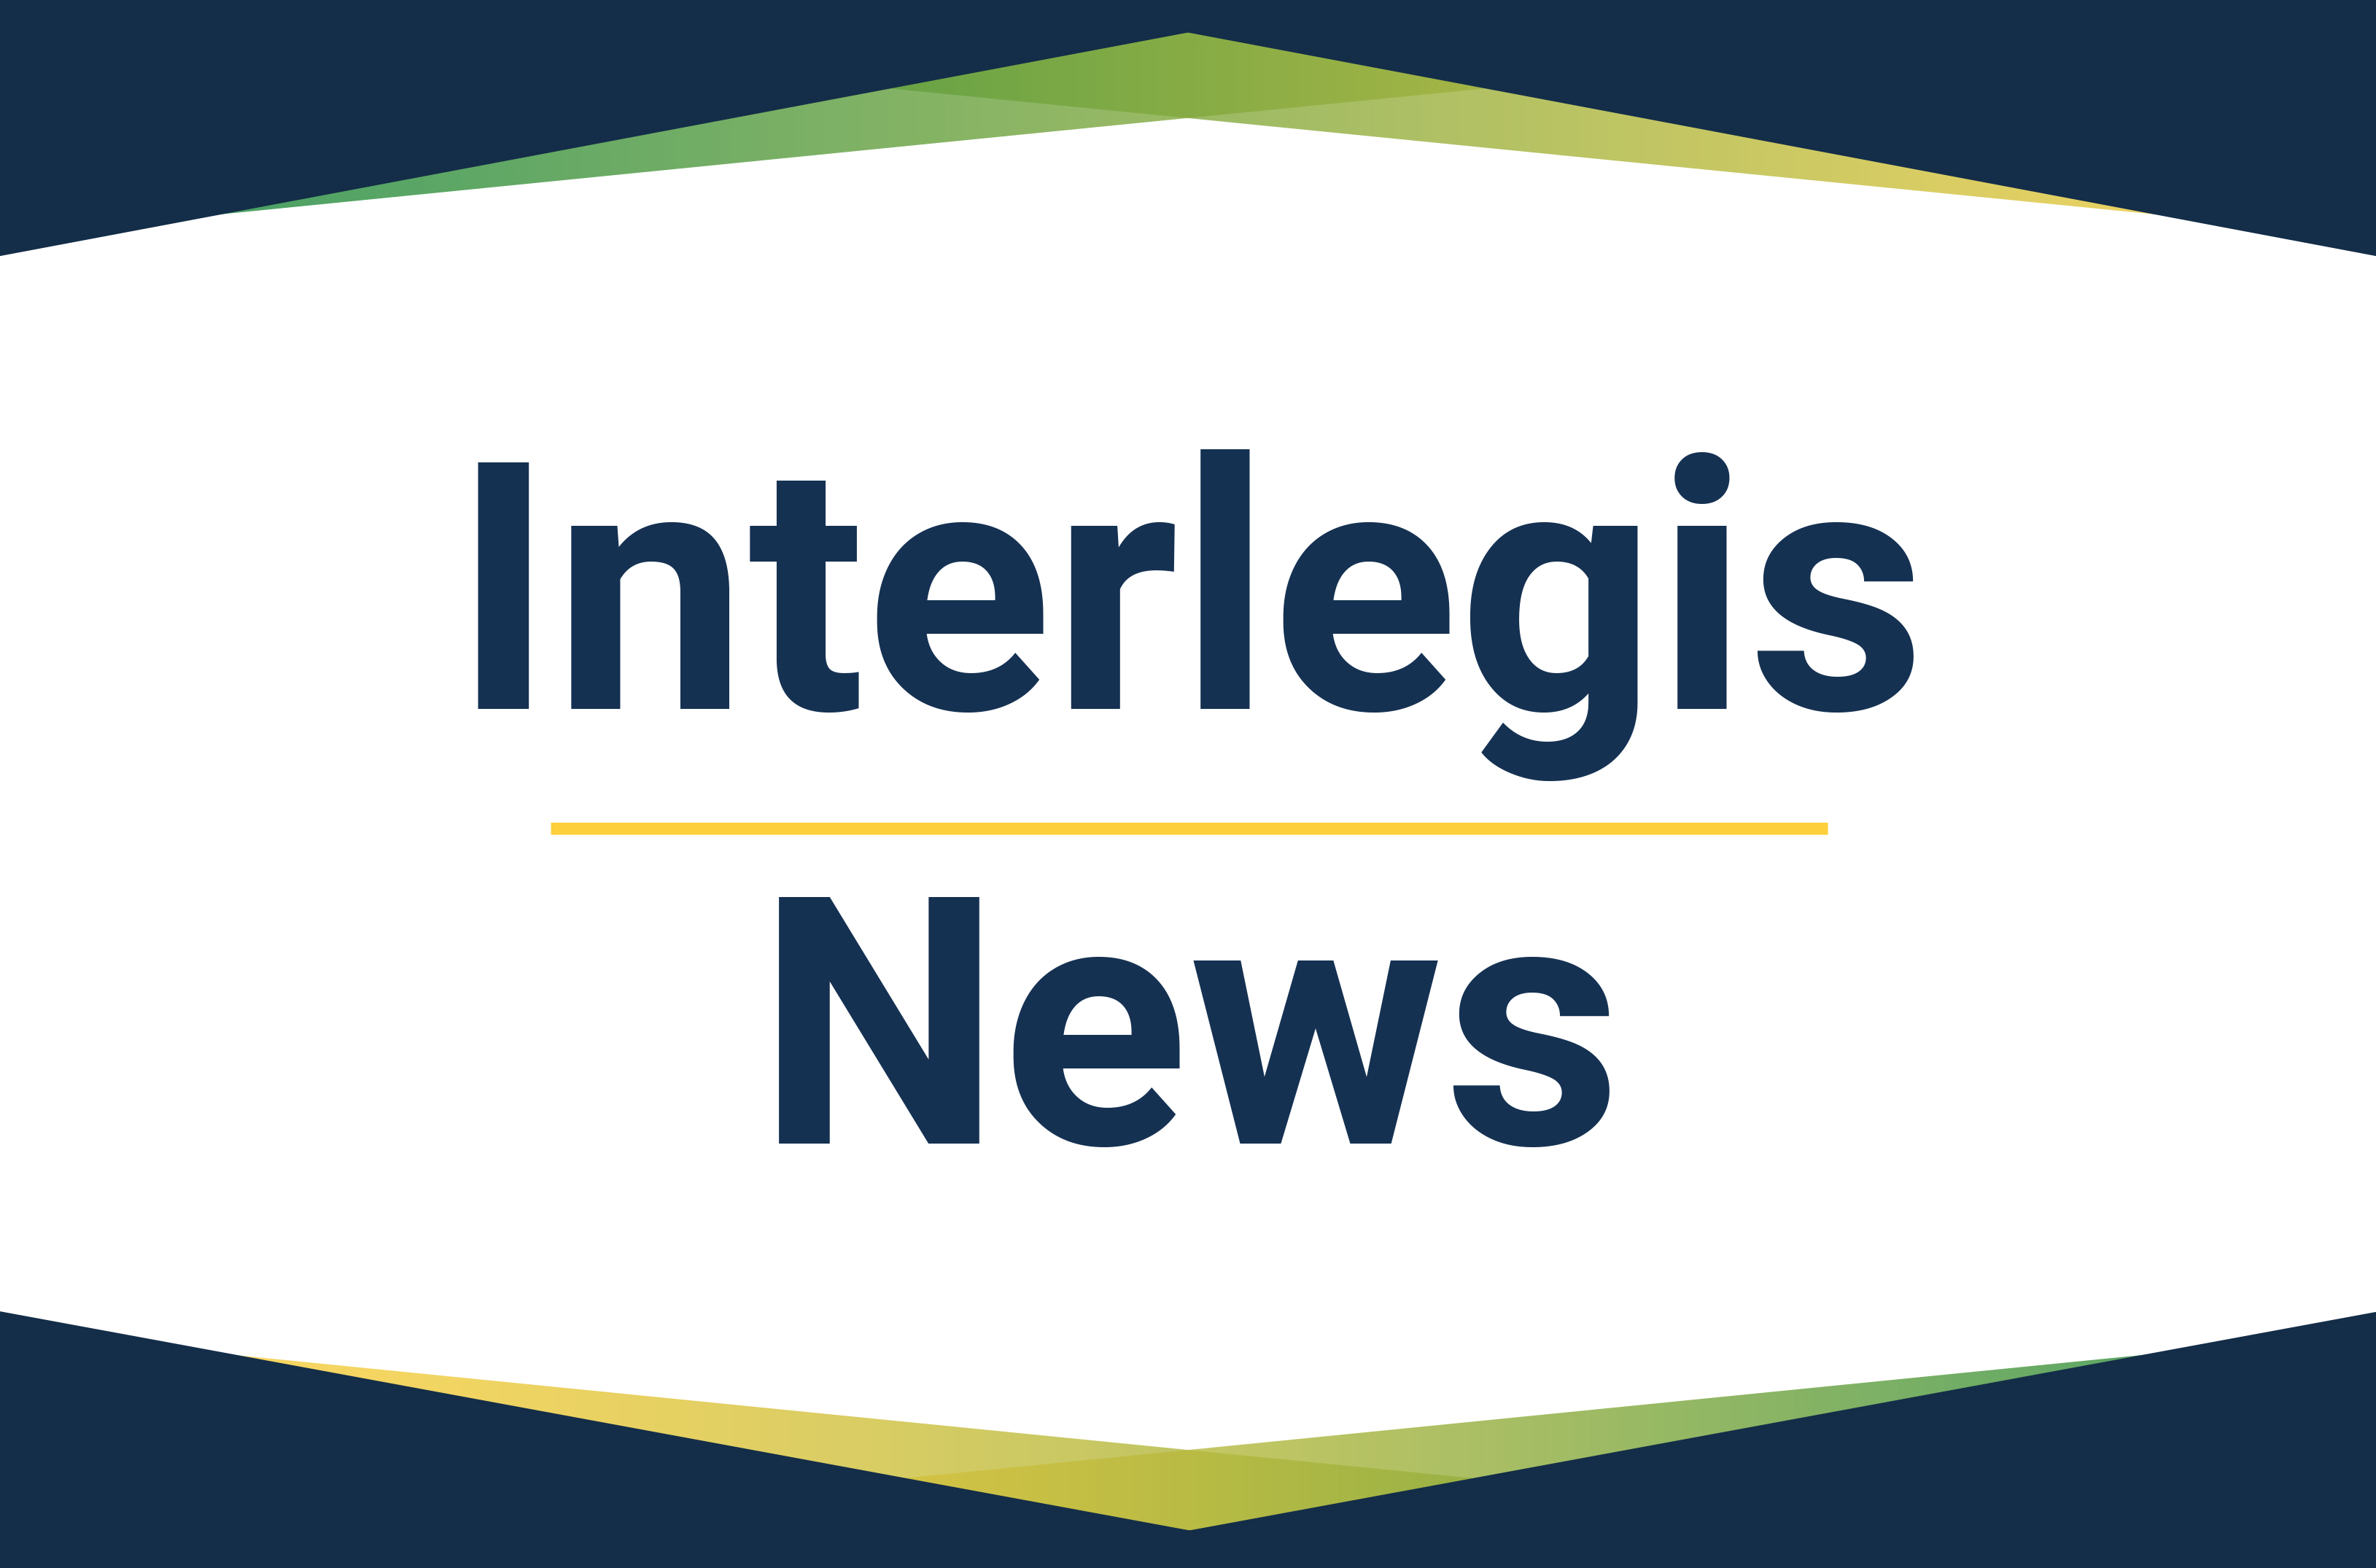 Interlegis News: Confira as principais ações realizadas pelo Interlegis